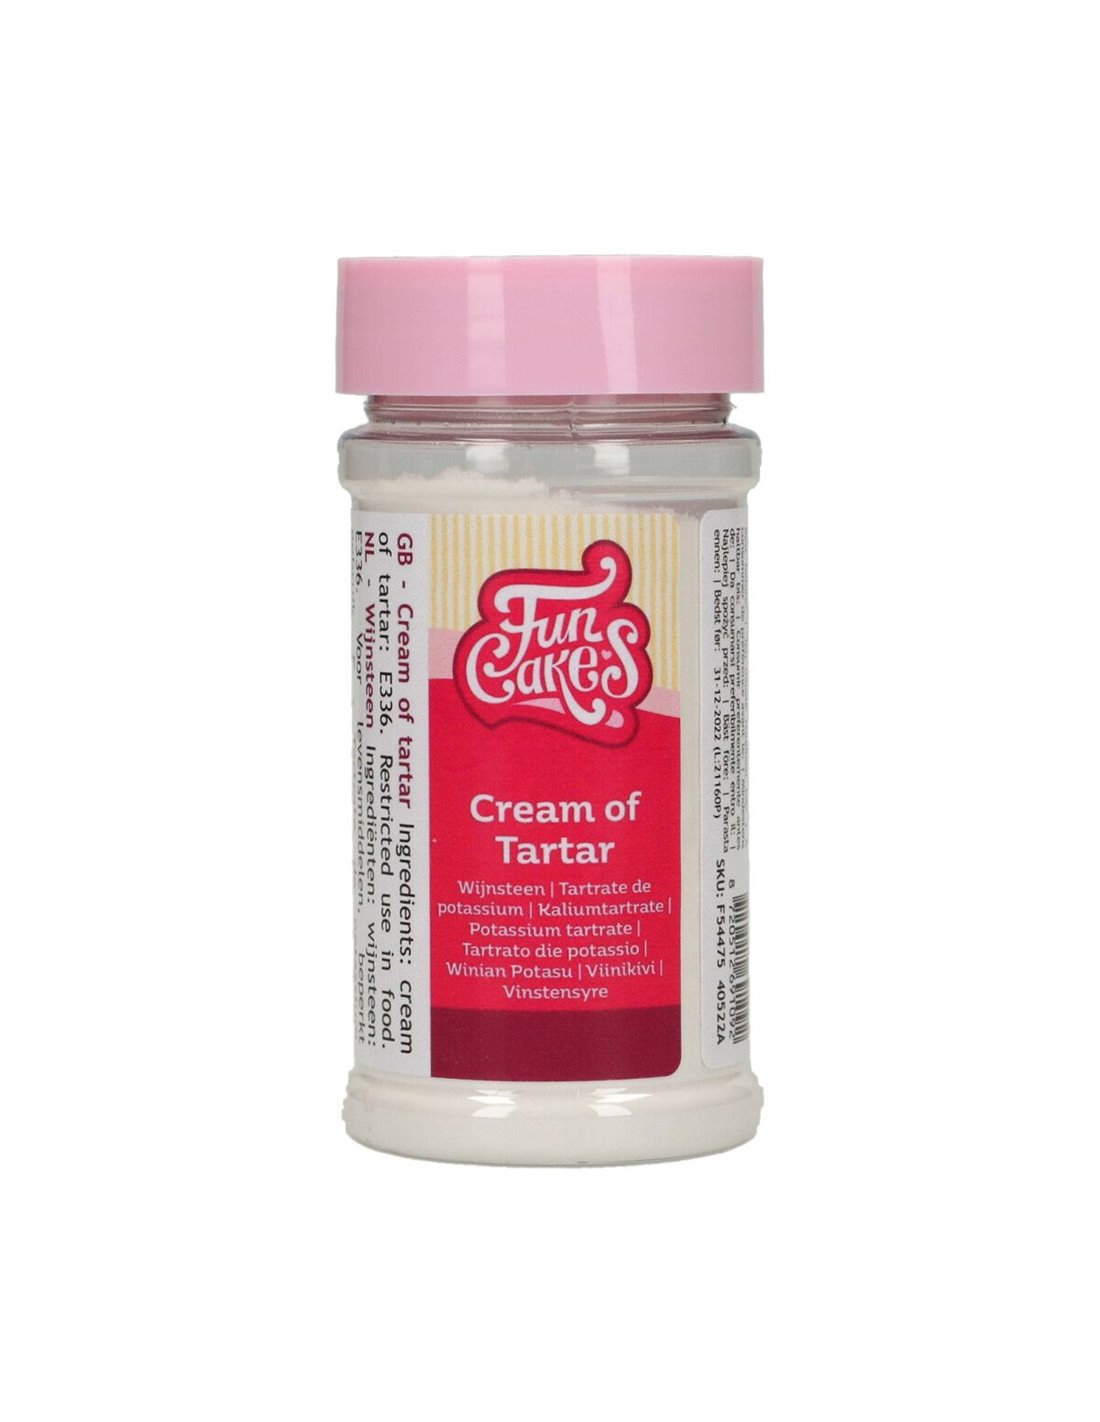 Qué es el cremor tártaro y para qué se usa en la cocina?